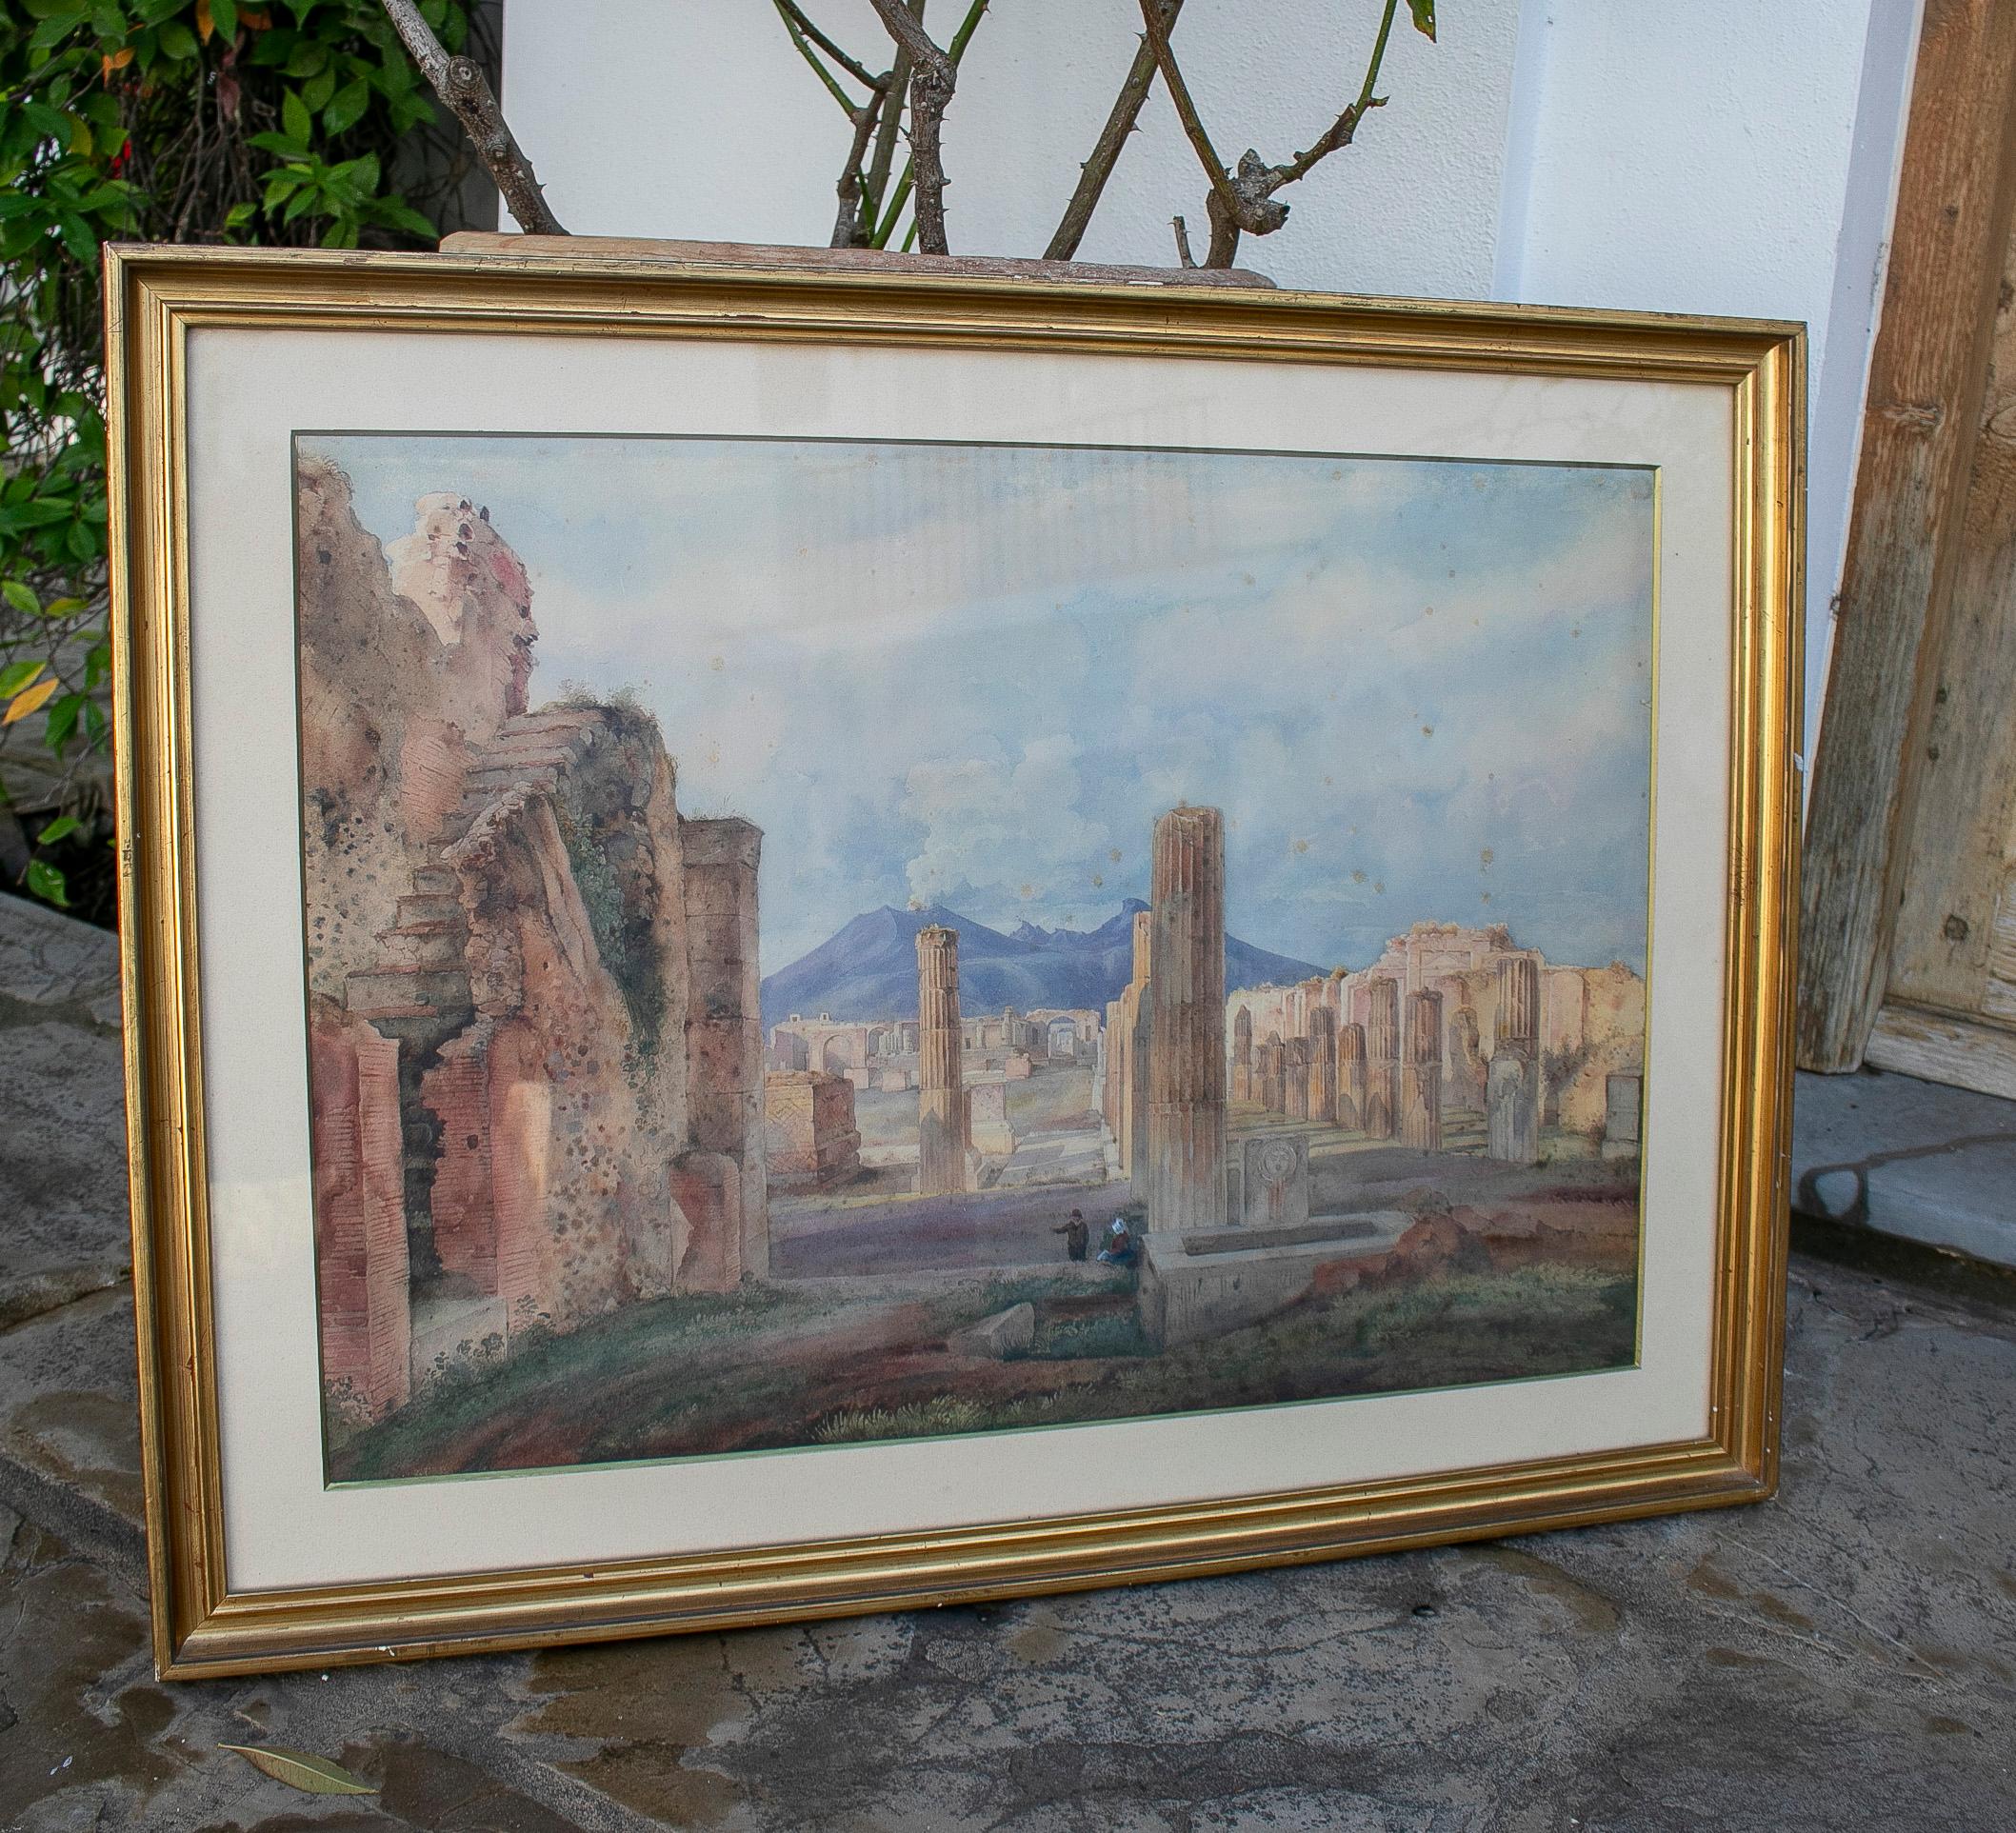 Antikes Aquarell der Landschaft von Pompeji aus dem 19. Jahrhundert mit dem Vesuv im Hintergrund. 

Für den europäischen Adel war es üblich, Italien mit seinen klassischen und renaissancezeitlichen Glanzleistungen zu besuchen. 

Maße mit Rahmen: